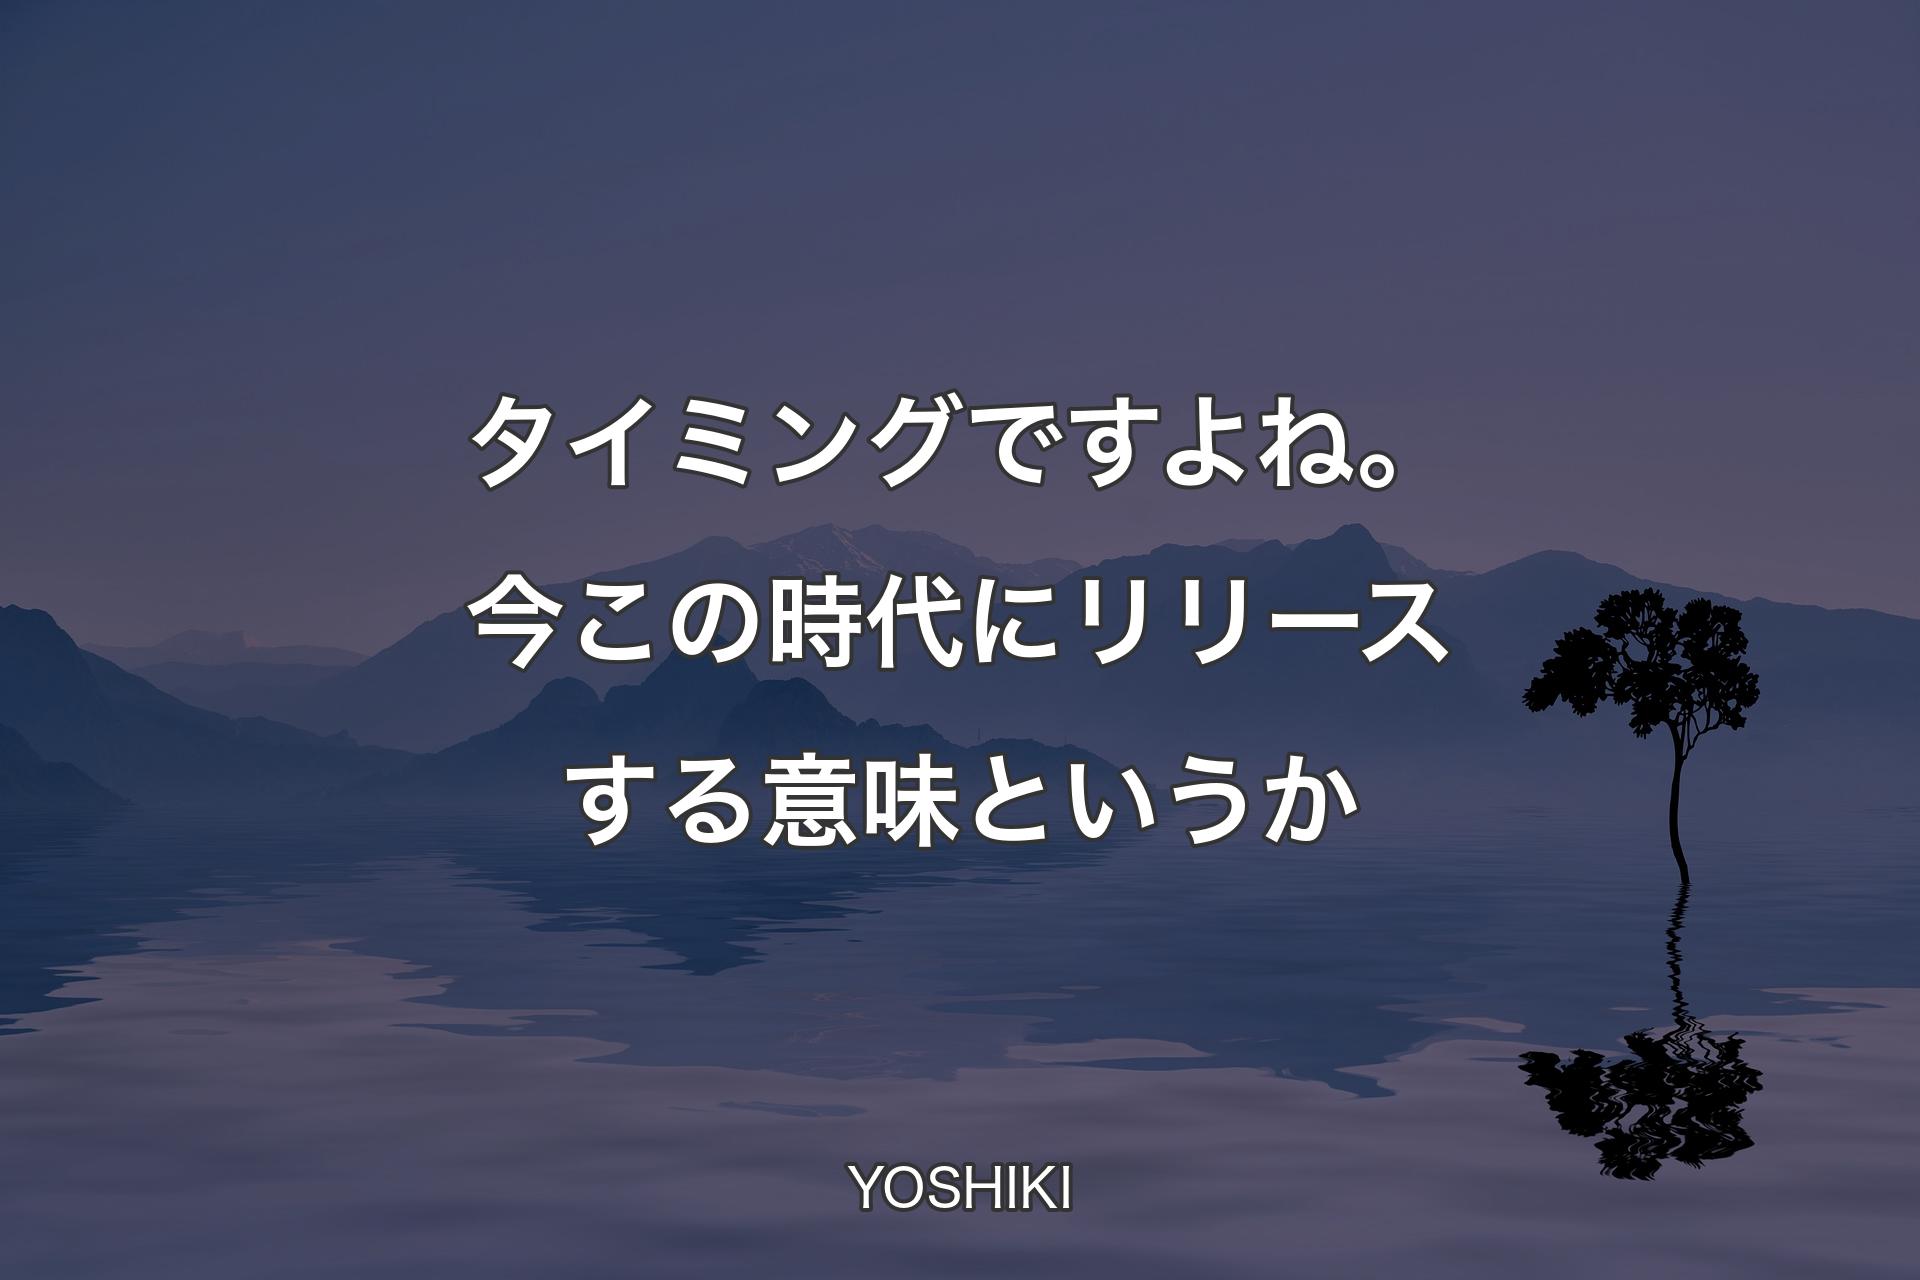 【背景4】タイミングですよね。今この時代にリリースする意味とい�うか - YOSHIKI